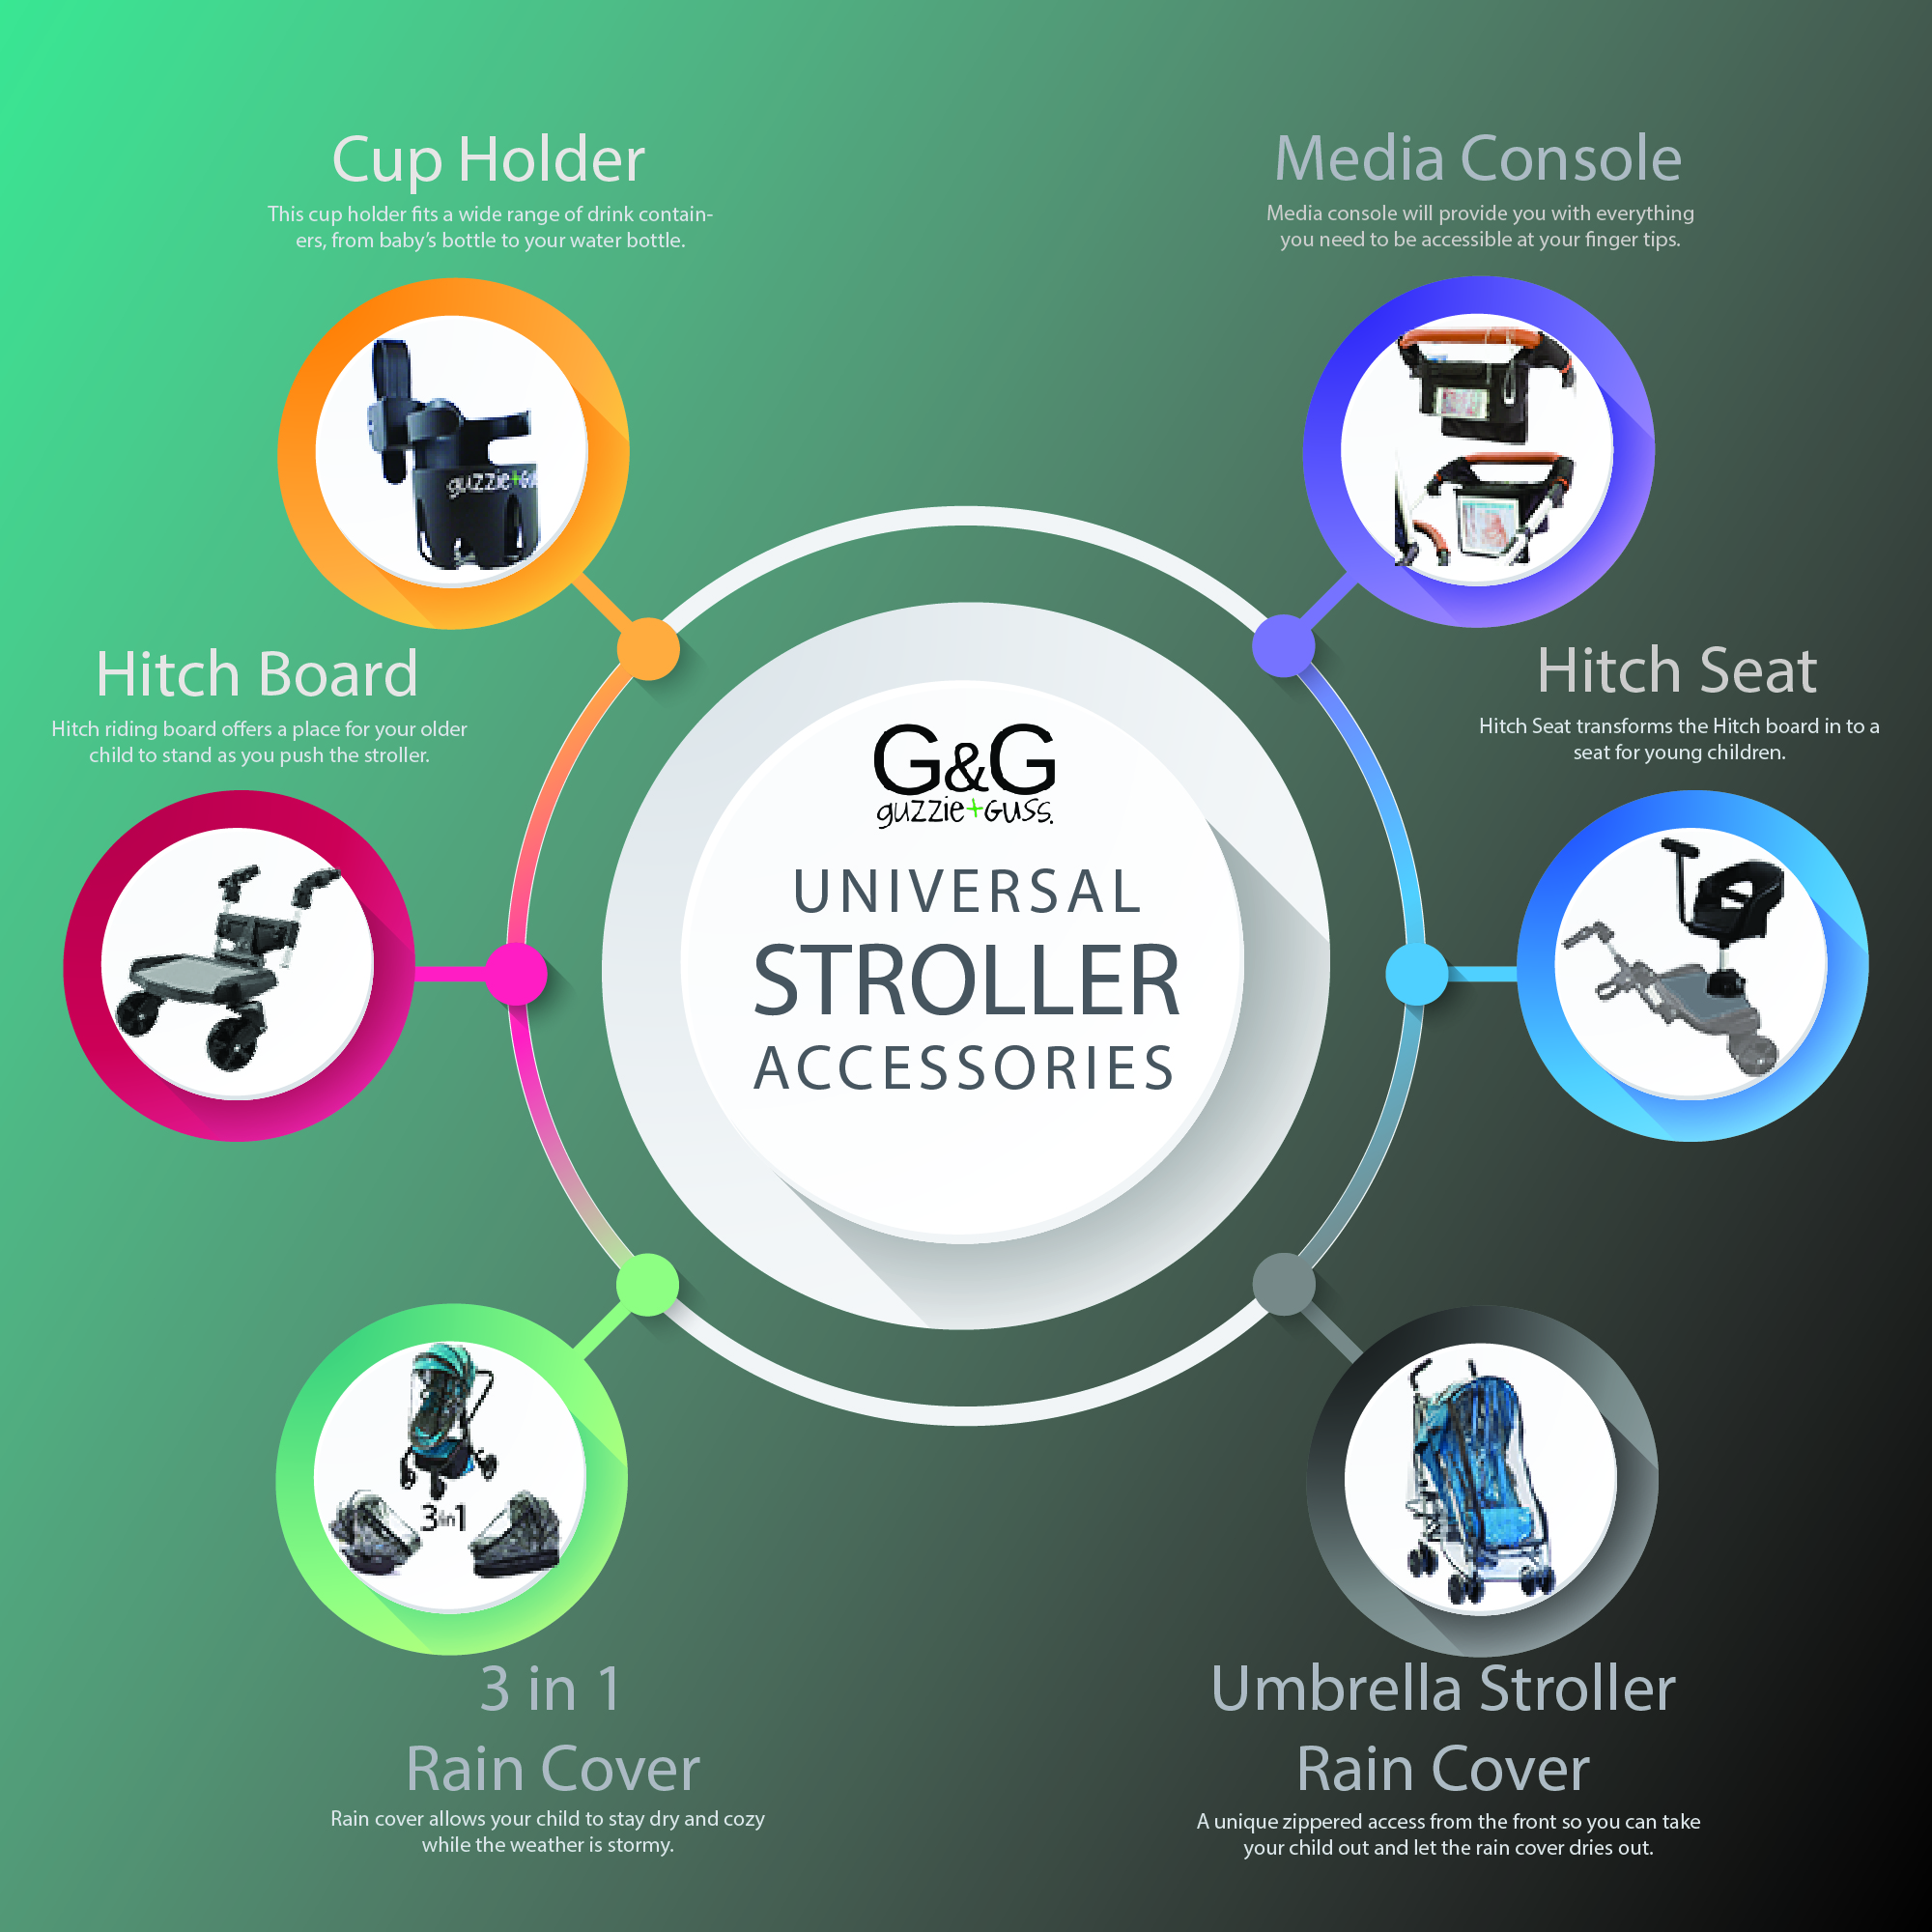 Universal Stroller Accessories | guzzie+Guss 